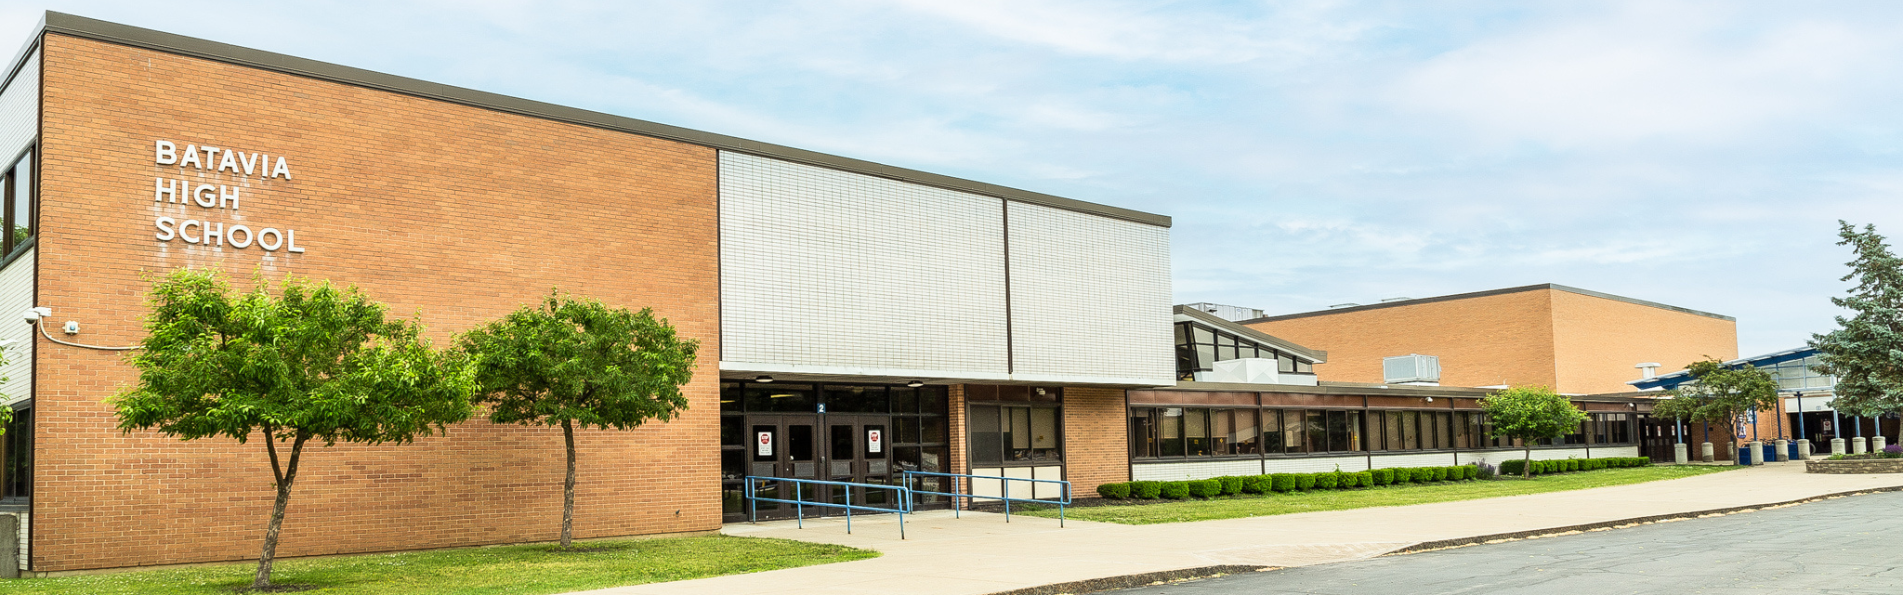 Exterior image of Batavia High School